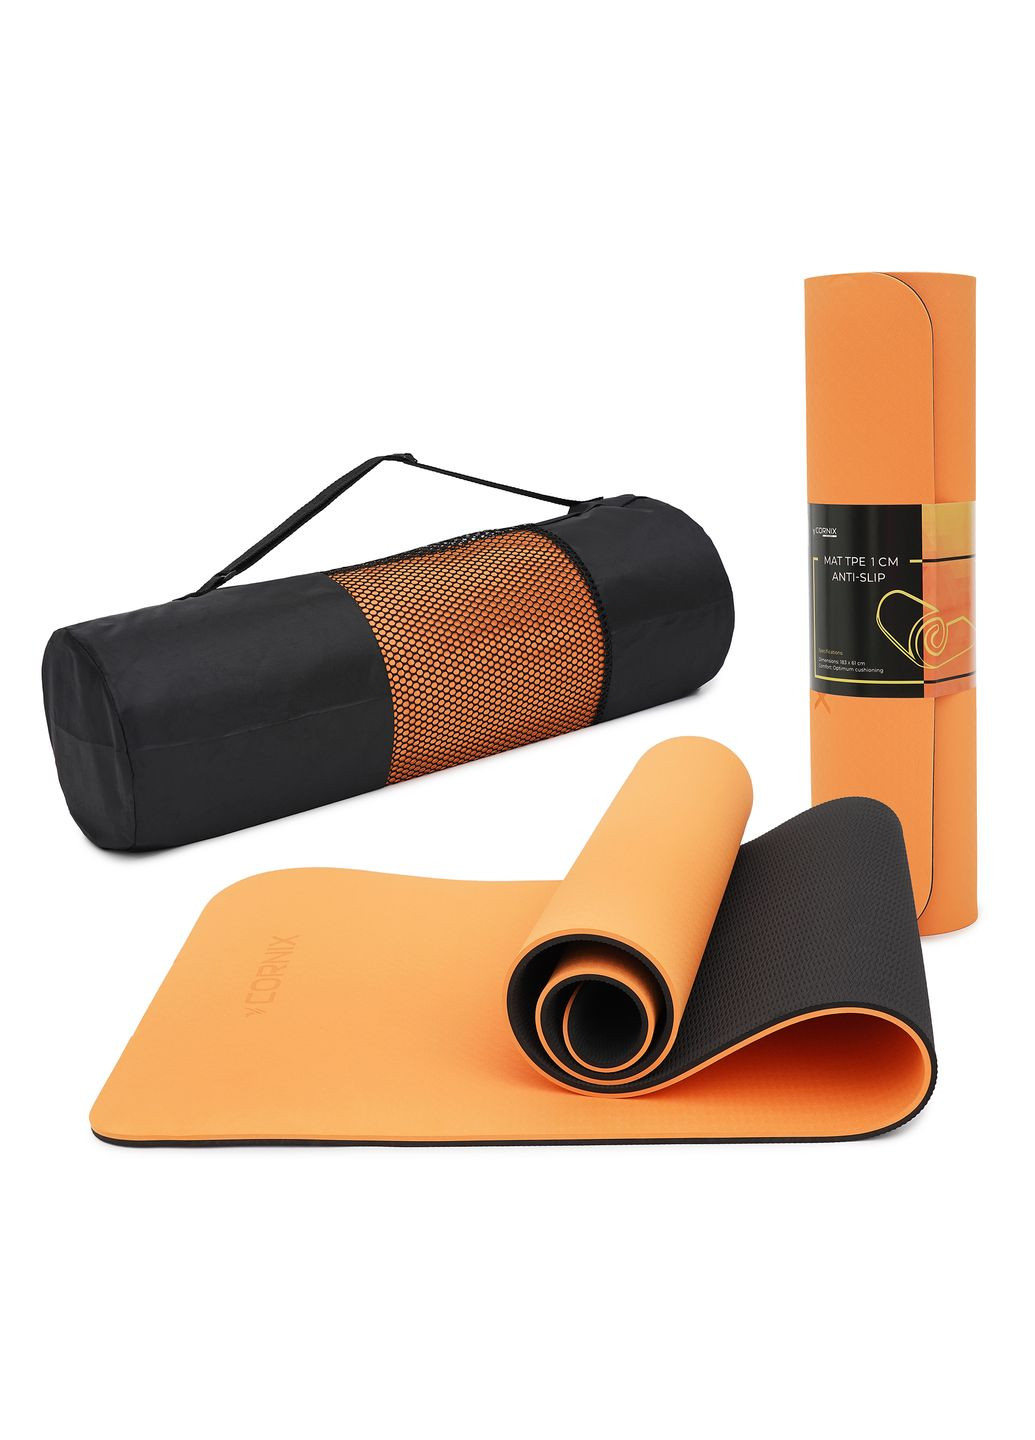 Коврик спортивный TPE 183 x 61 x 1 cм для йоги и фитнеса XR0091 Orange/Black Cornix xr-0091 (275654232)